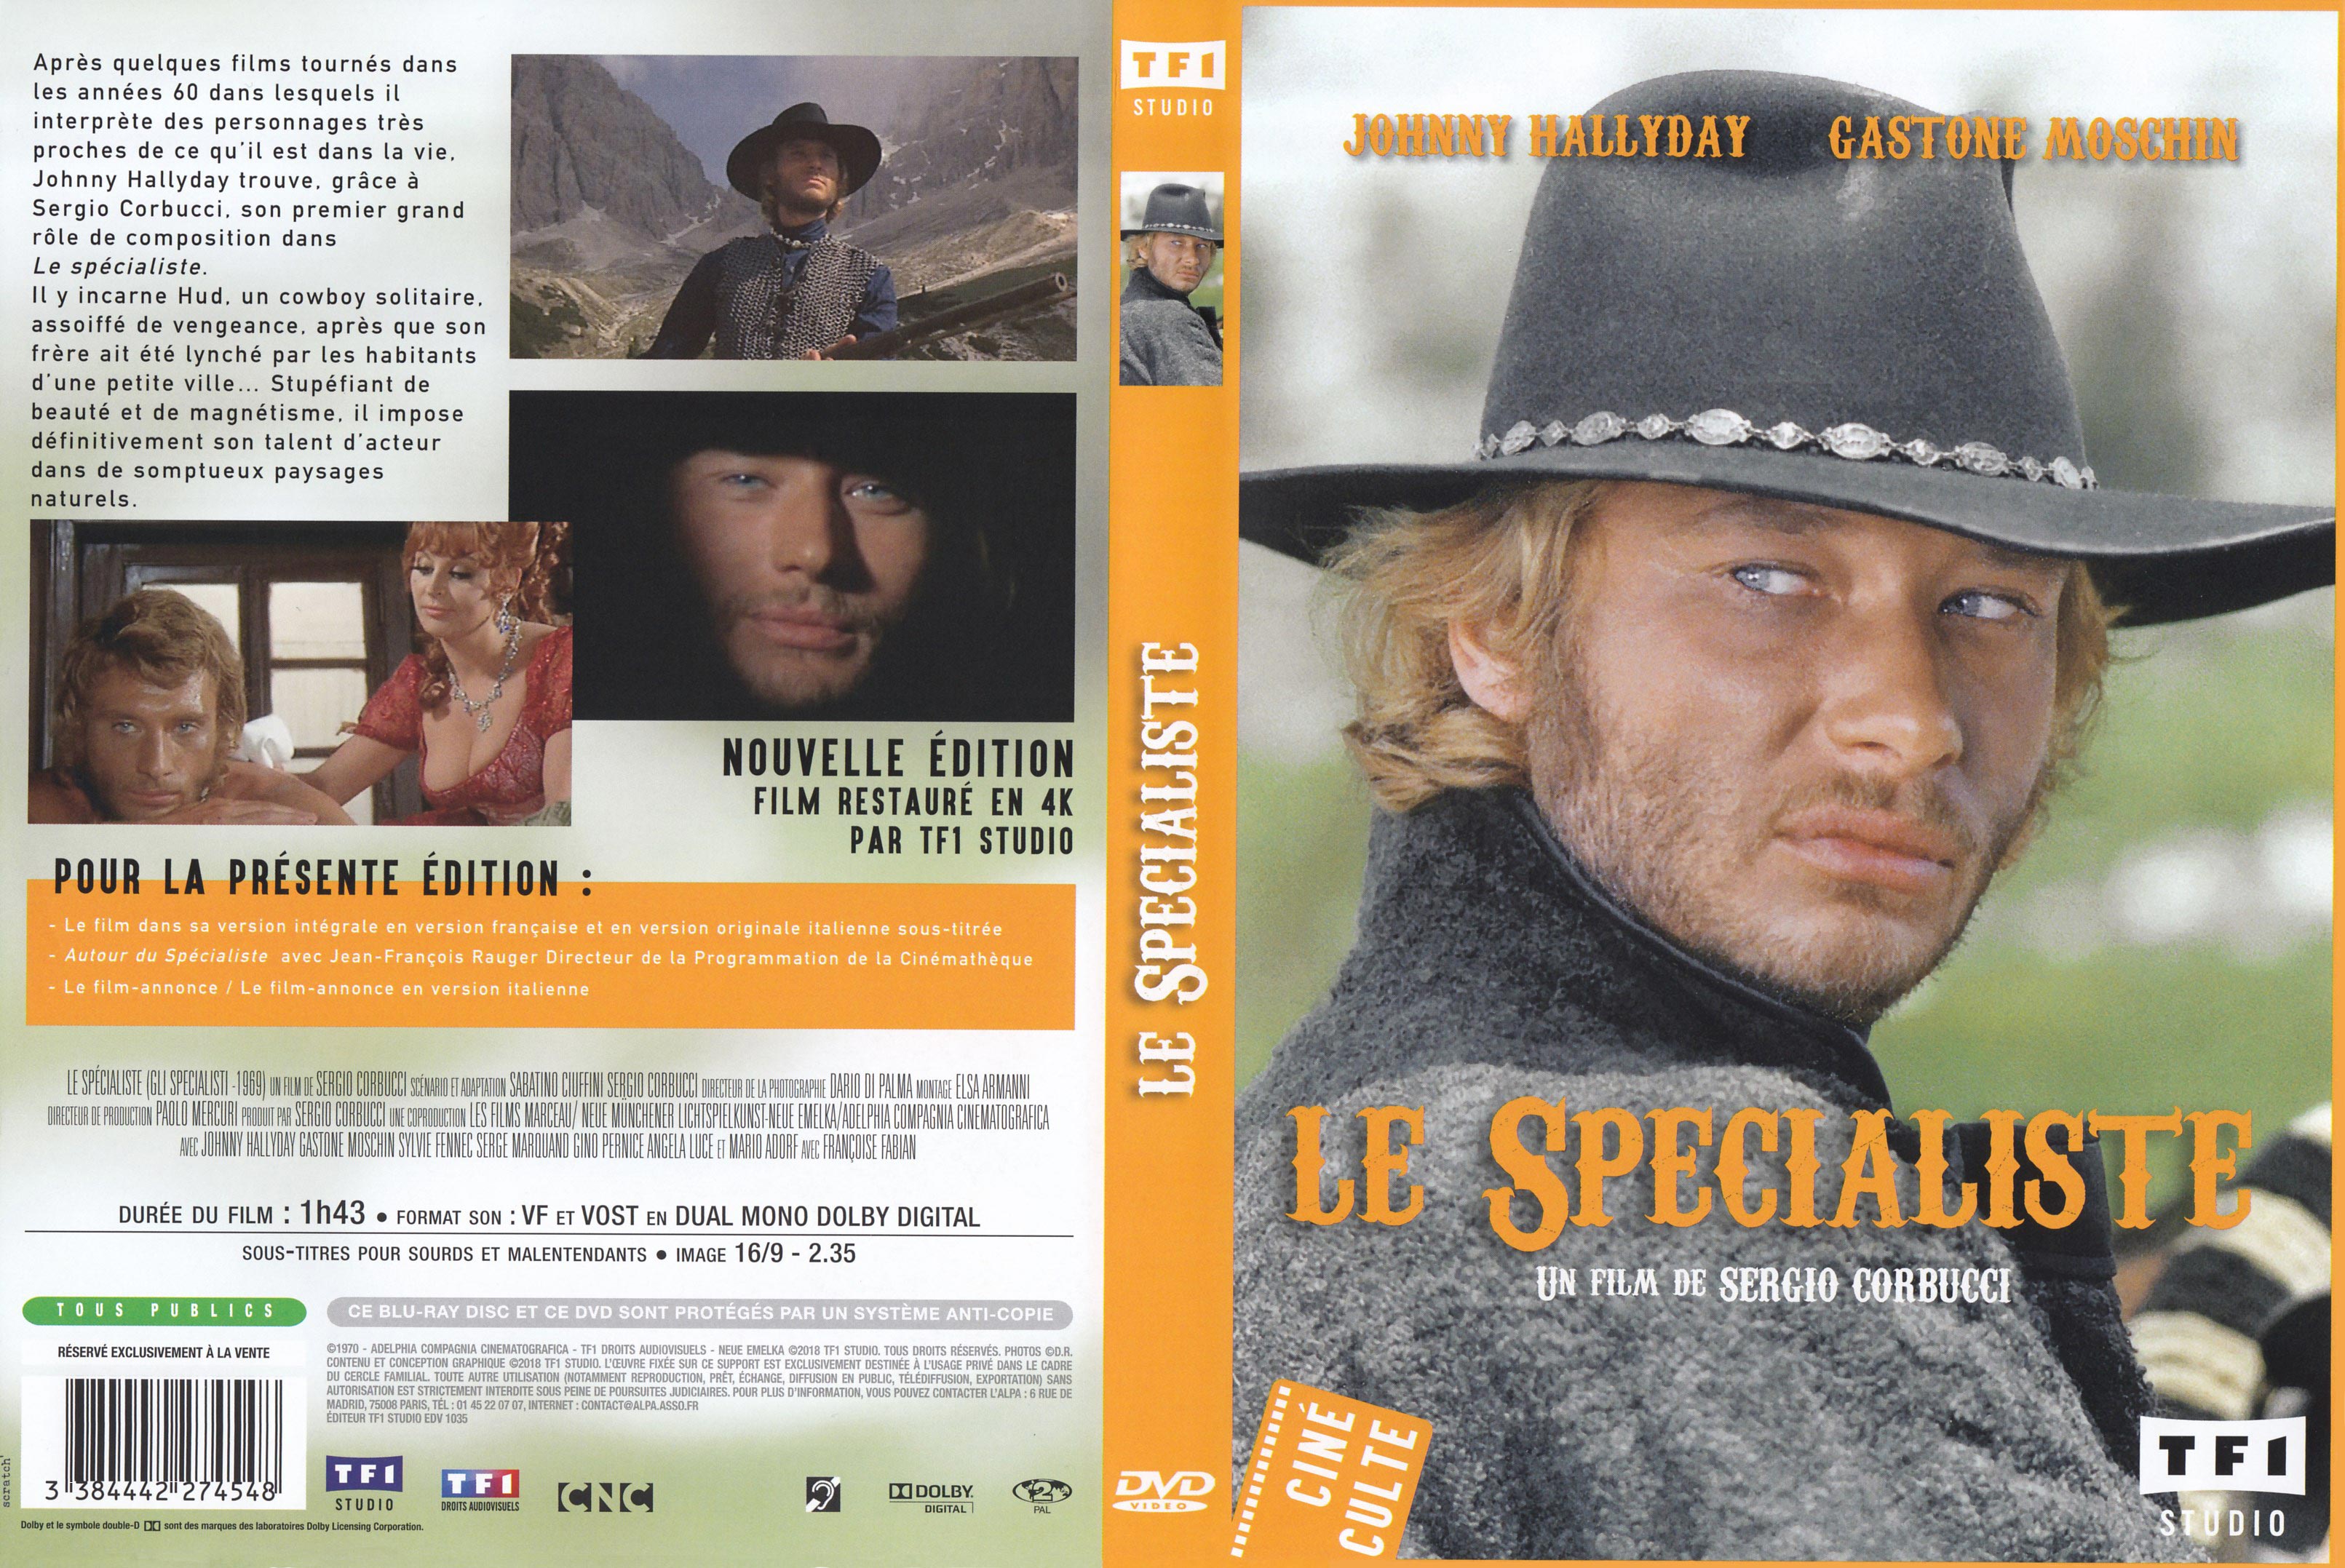 Jaquette DVD Le spcialiste v2